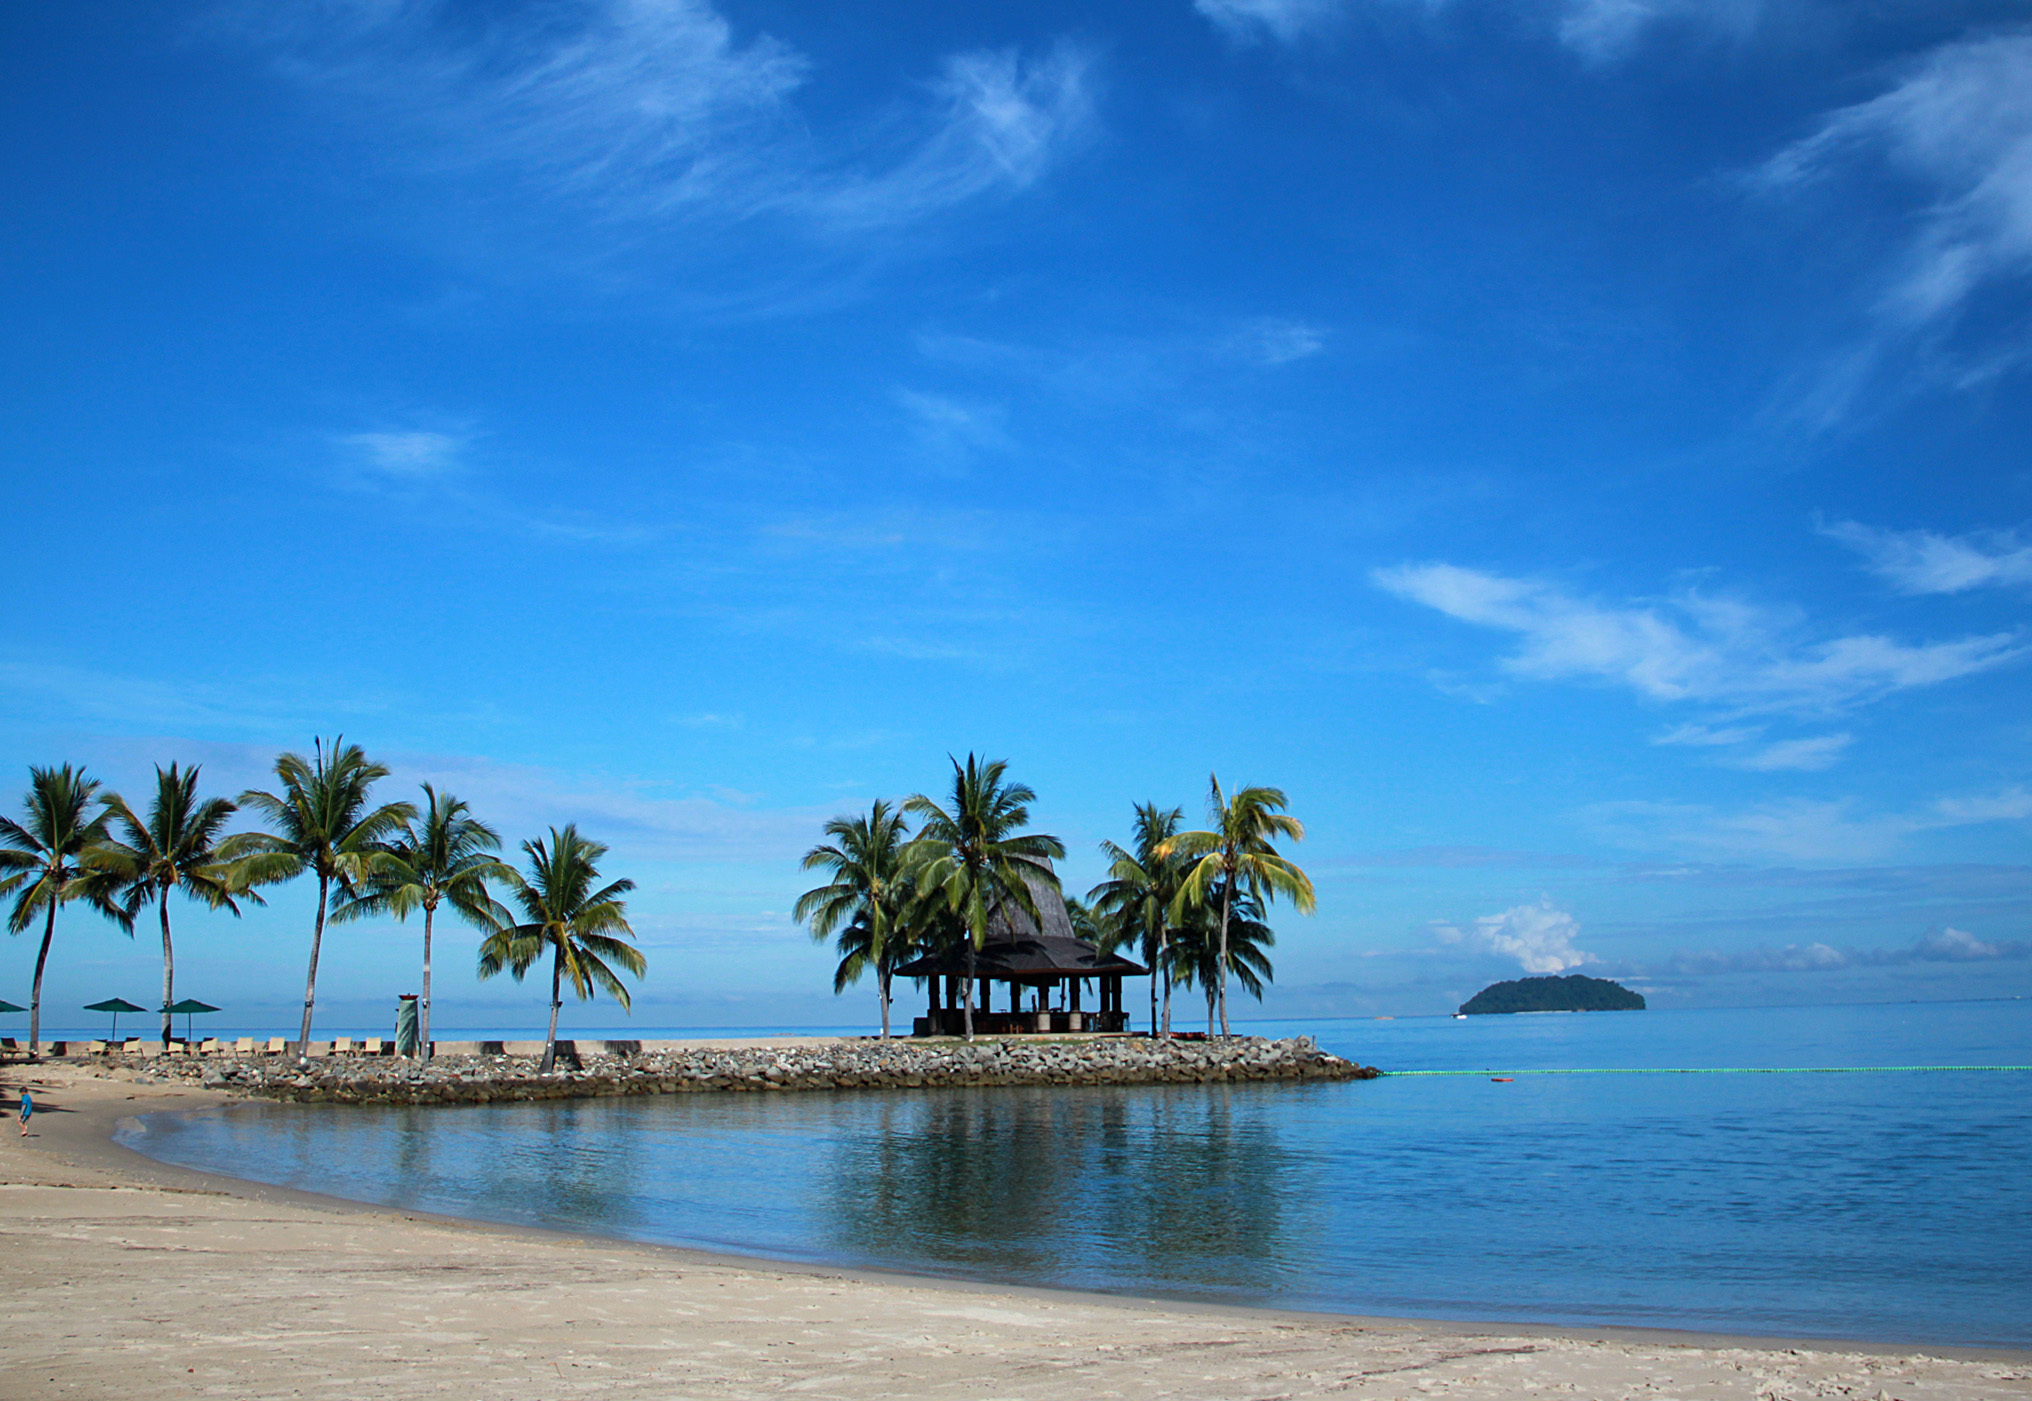 马来西亚最美十大岛屿 第一名你绝对没有去过!